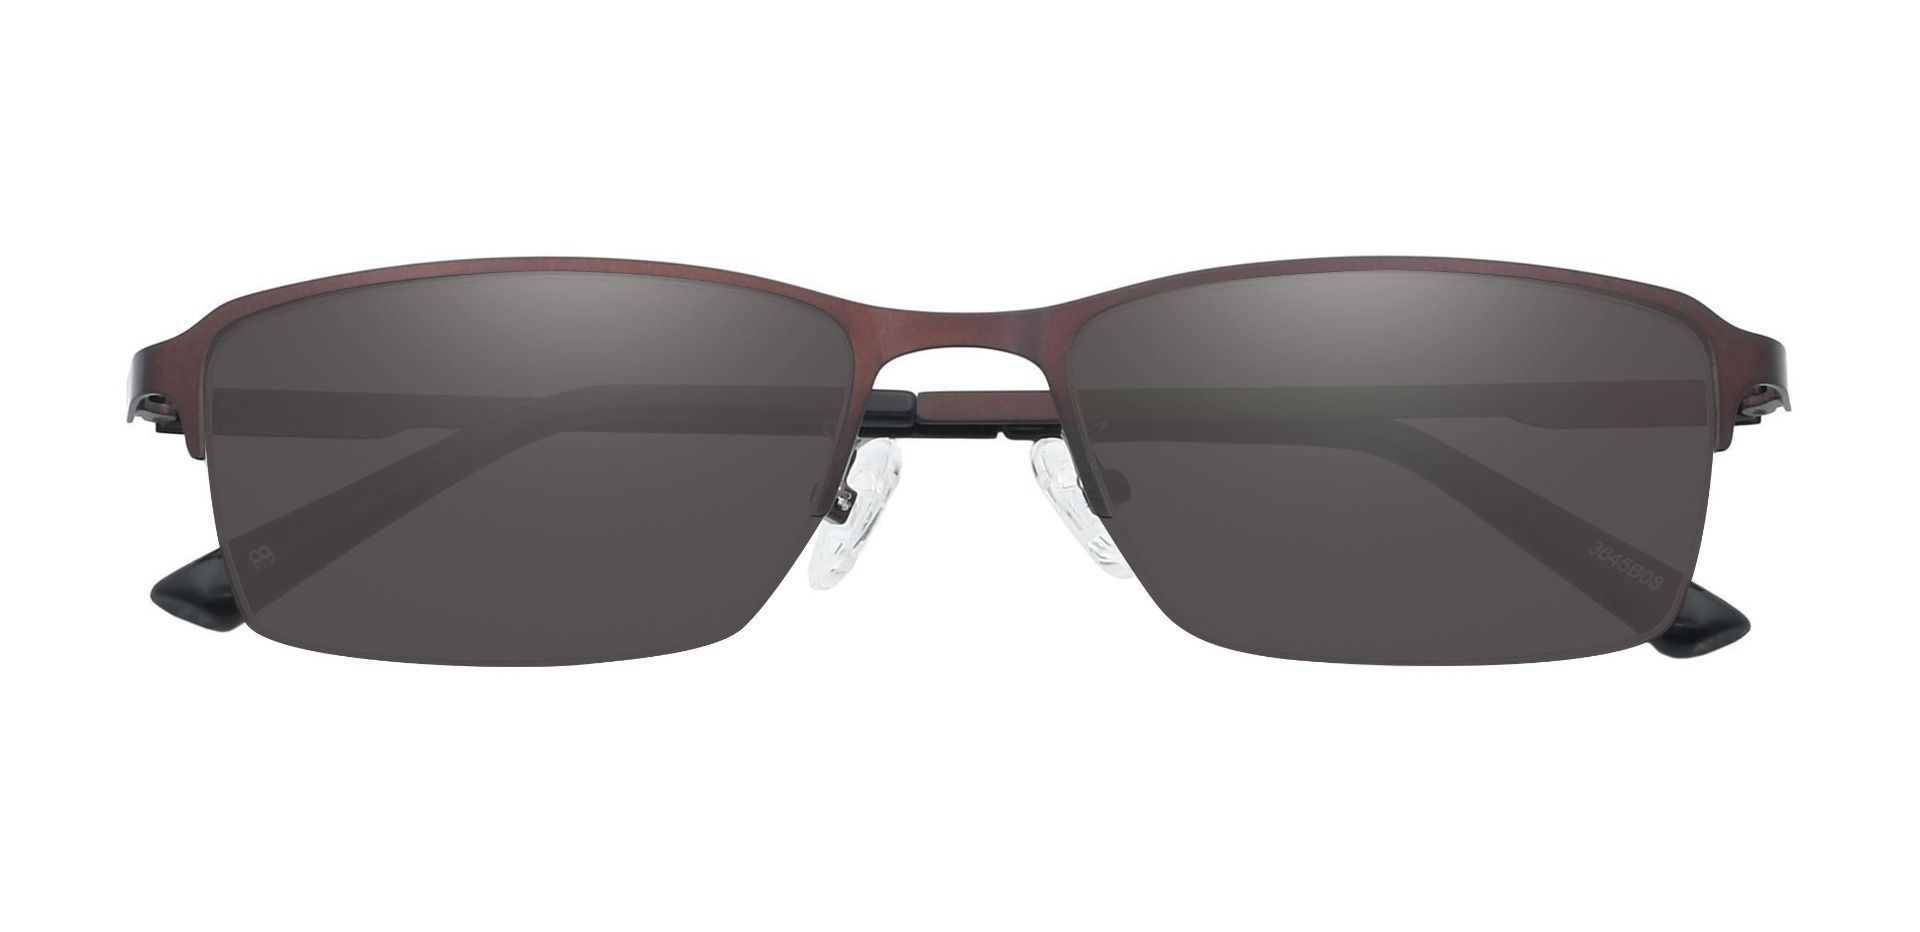 Bennett Rectangle Prescription Sunglasses - Brown Frame With Gray Lenses